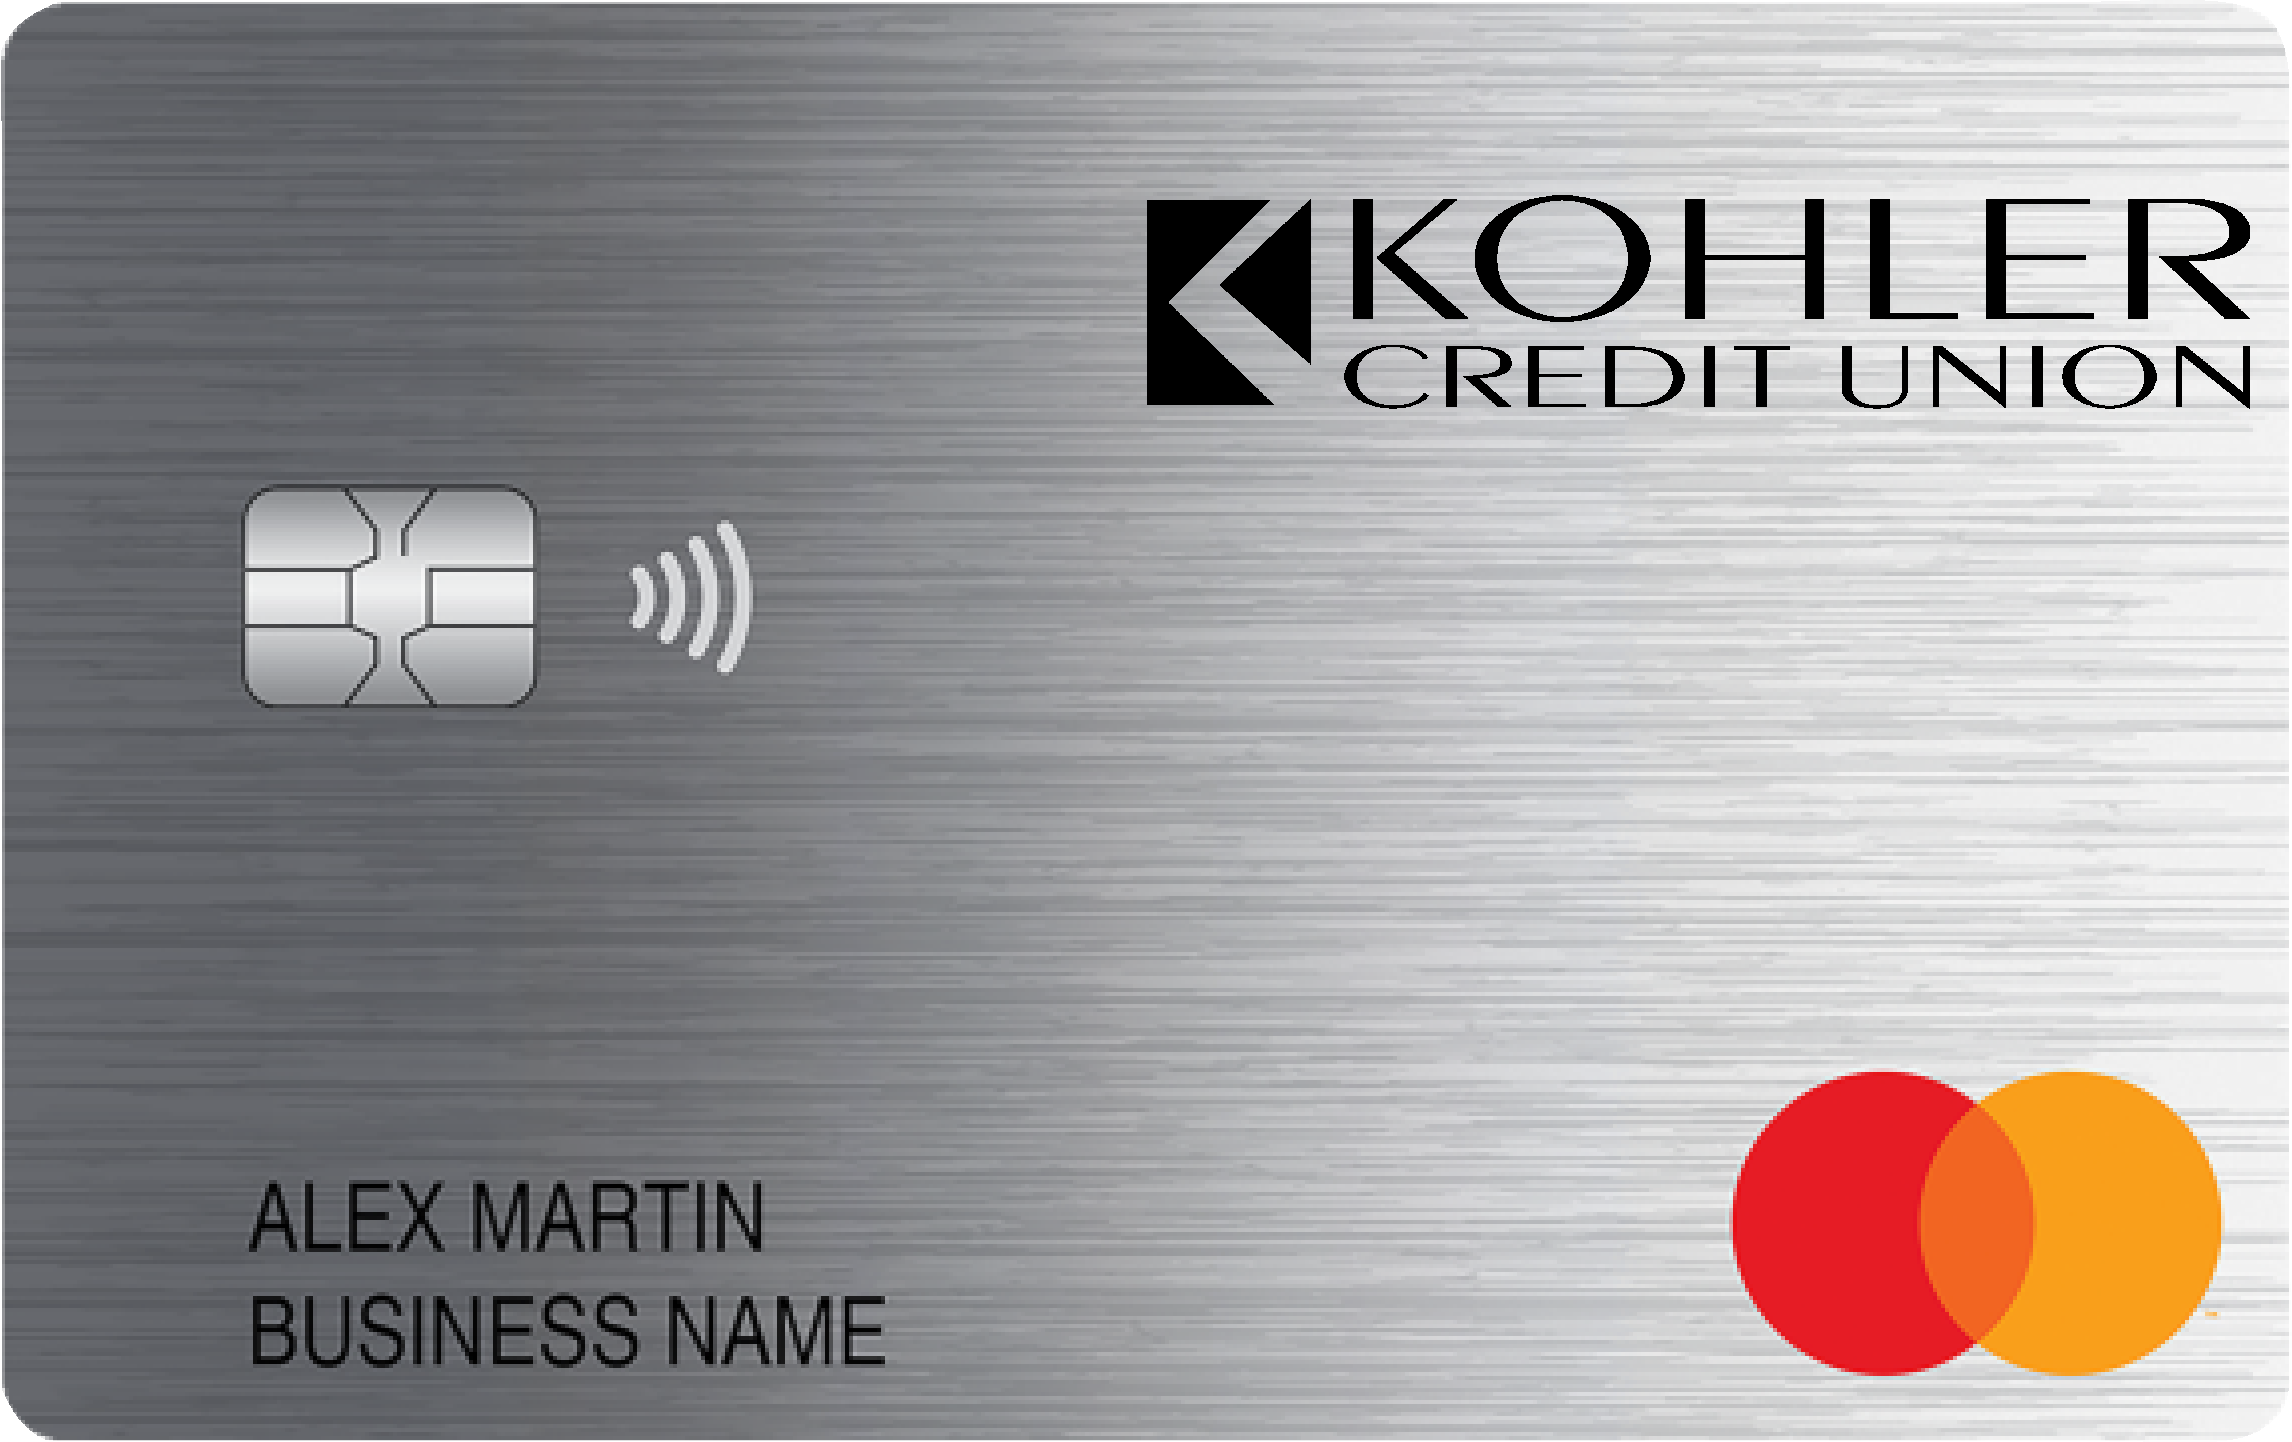 Kohler Credit Union Smart Business Rewards Card